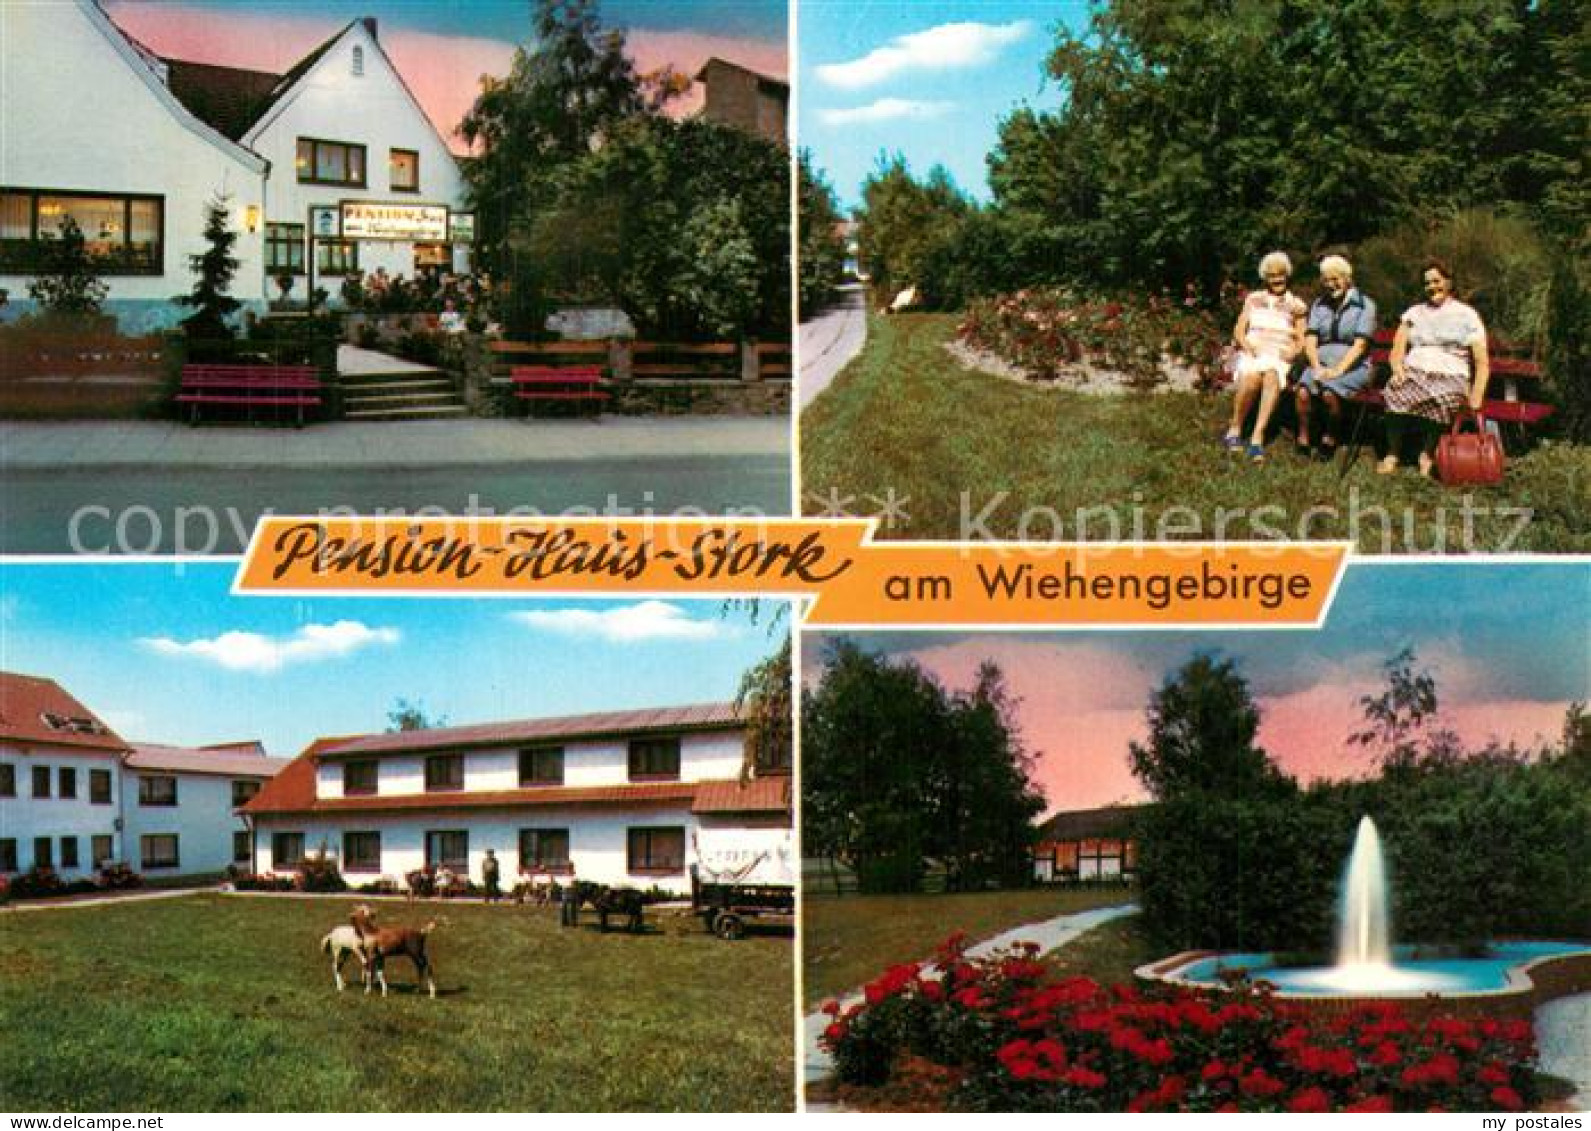 73543604 Bad Holzhausen Luebbecke Pension Haus Stork Park Brunnen Bad Holzhausen - Getmold